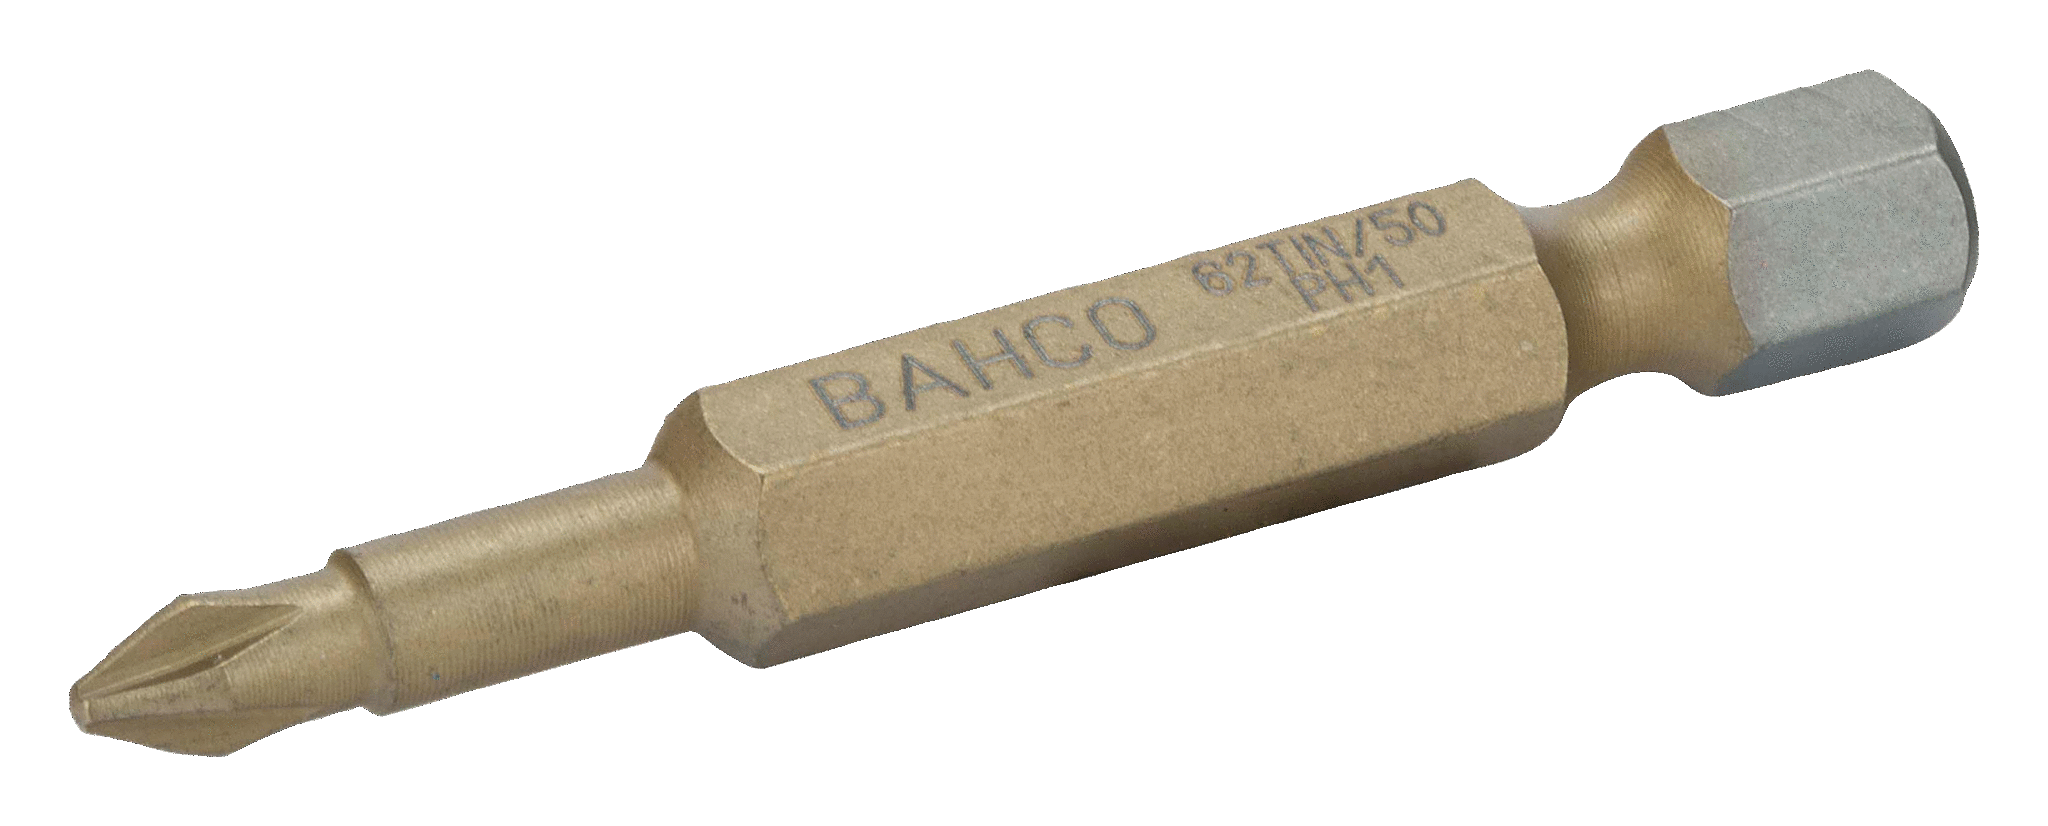 Торсионные биты с покрытием из нитрида титана для отверток Phillips, 50 мм BAHCO 62TIN/50PH2